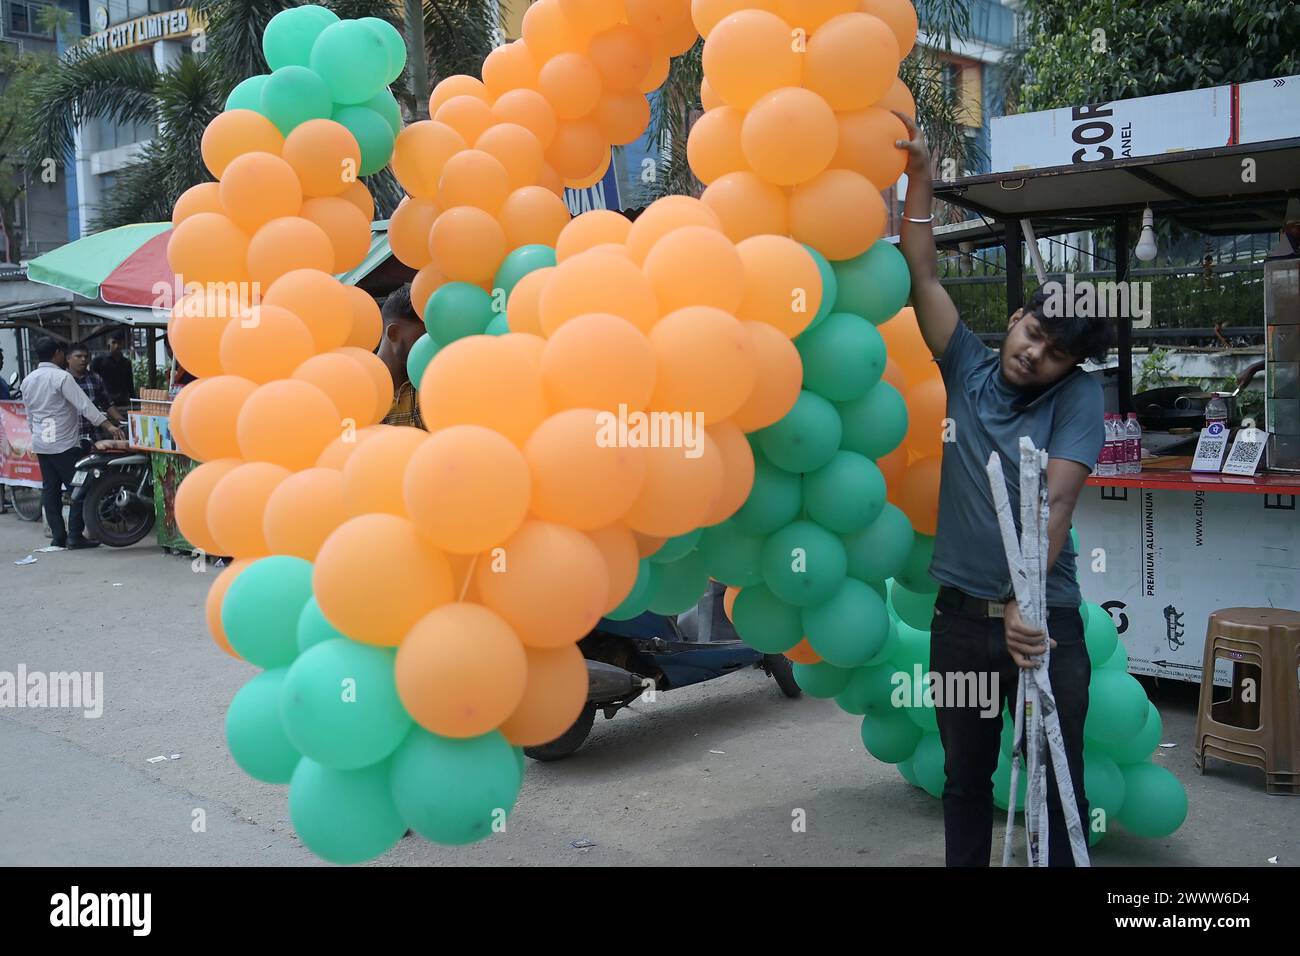 I sostenitori del BJP sono visti decorare palloncini nei colori del partito in un raduno con il primo ministro del Tripura Manik Saha, l'ex candidato del cm e del BJP Biplab Kumar Deb e Kriti Singh, insieme ad altri leader, durante una campagna elettorale a sostegno dei candidati di Lok Sabha ad Agartala. Tripura, India. Foto Stock